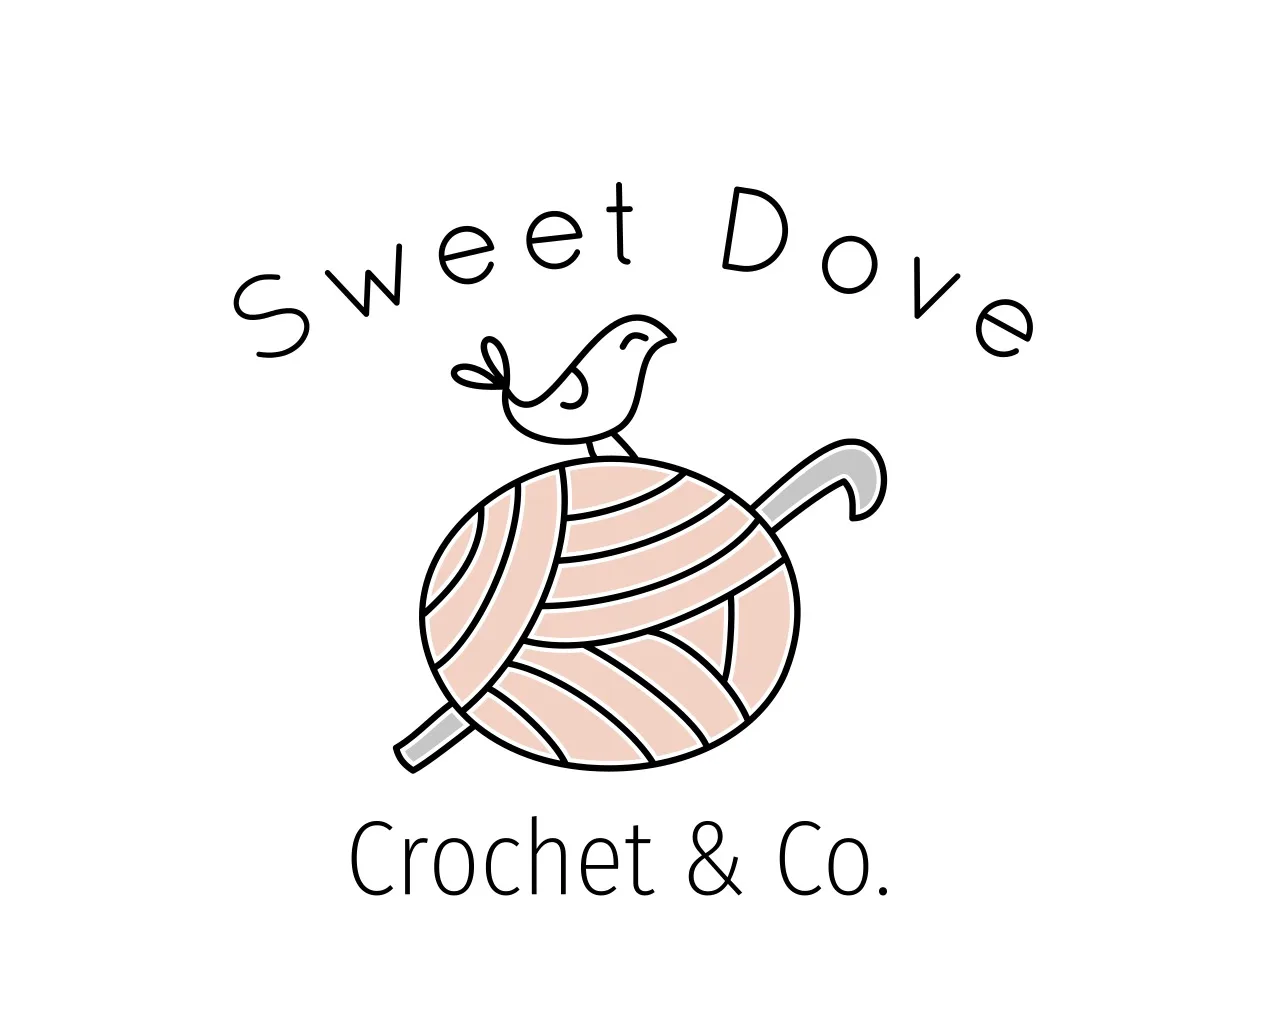 Sweet Dove Crochet & Co.